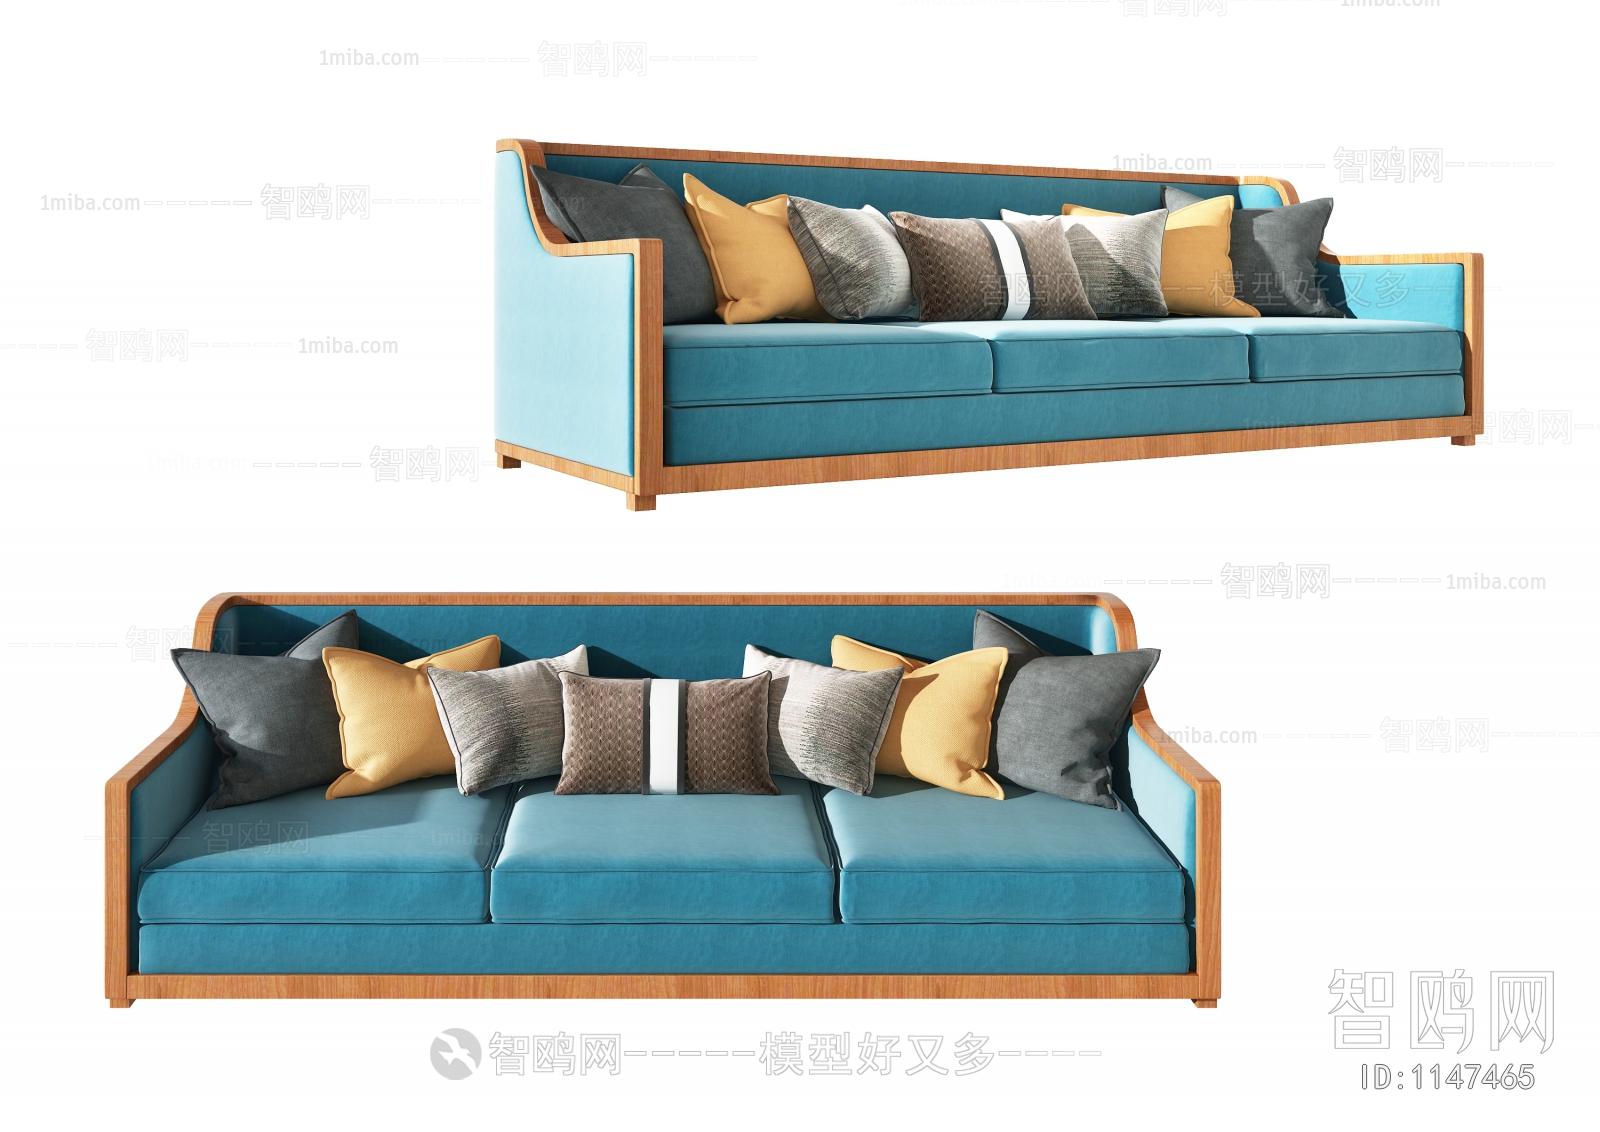 New Chinese Style Three-seat Sofa